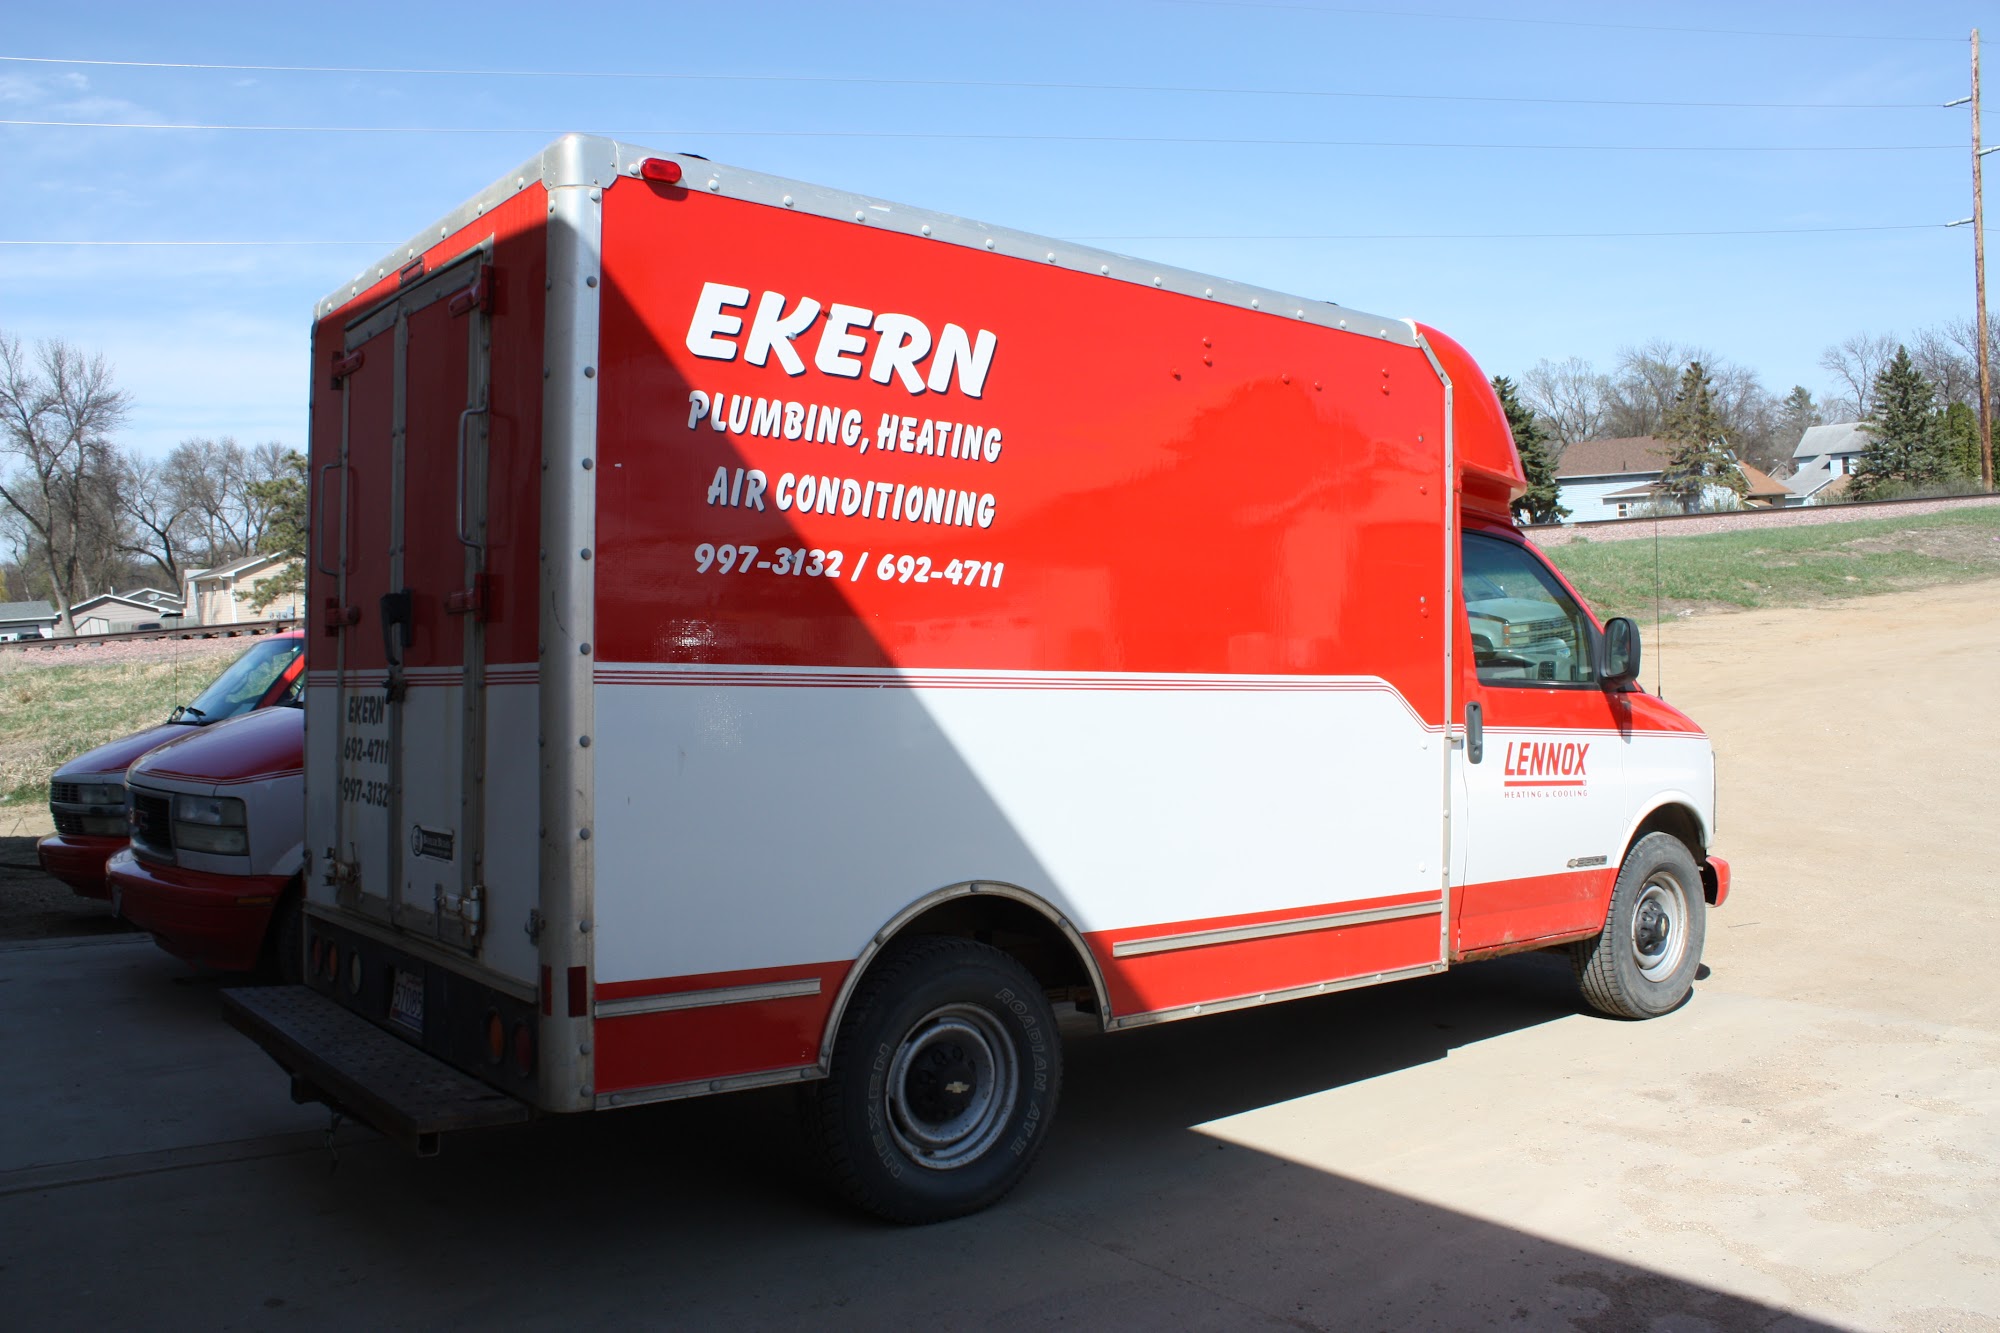 Ekern Home Equipment